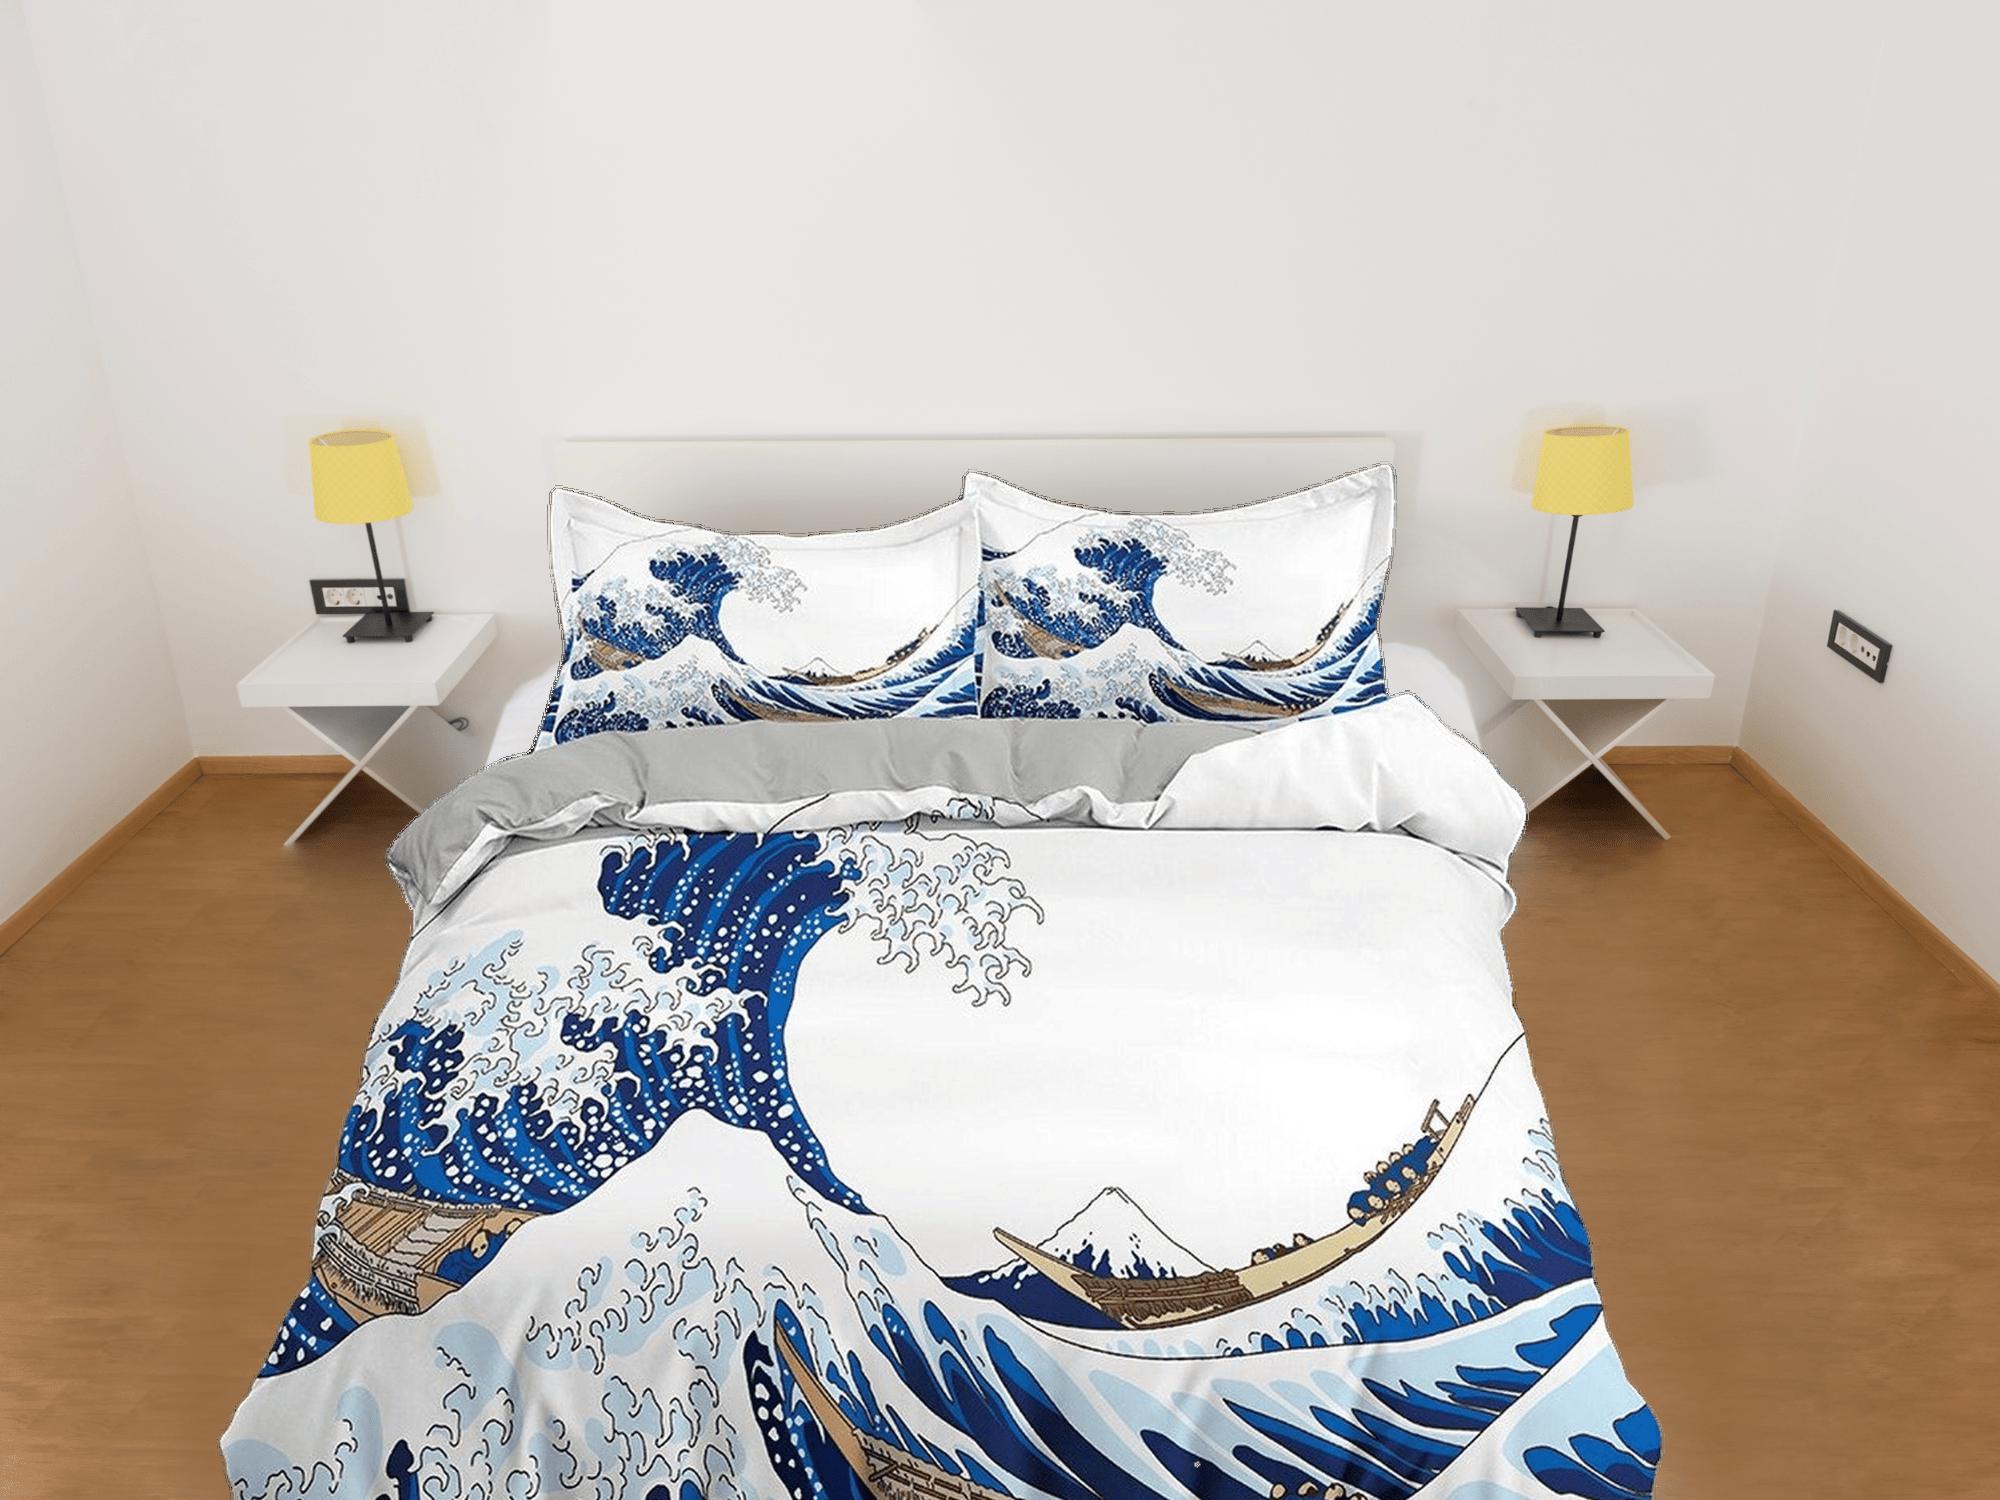 daintyduvet Great Wave Bedding, Japanese Bedding, Japanese Art Duvet Cover Set, Bed Coverlet, Aesthetic Duvet Cover King Queen Full Twin Double Single